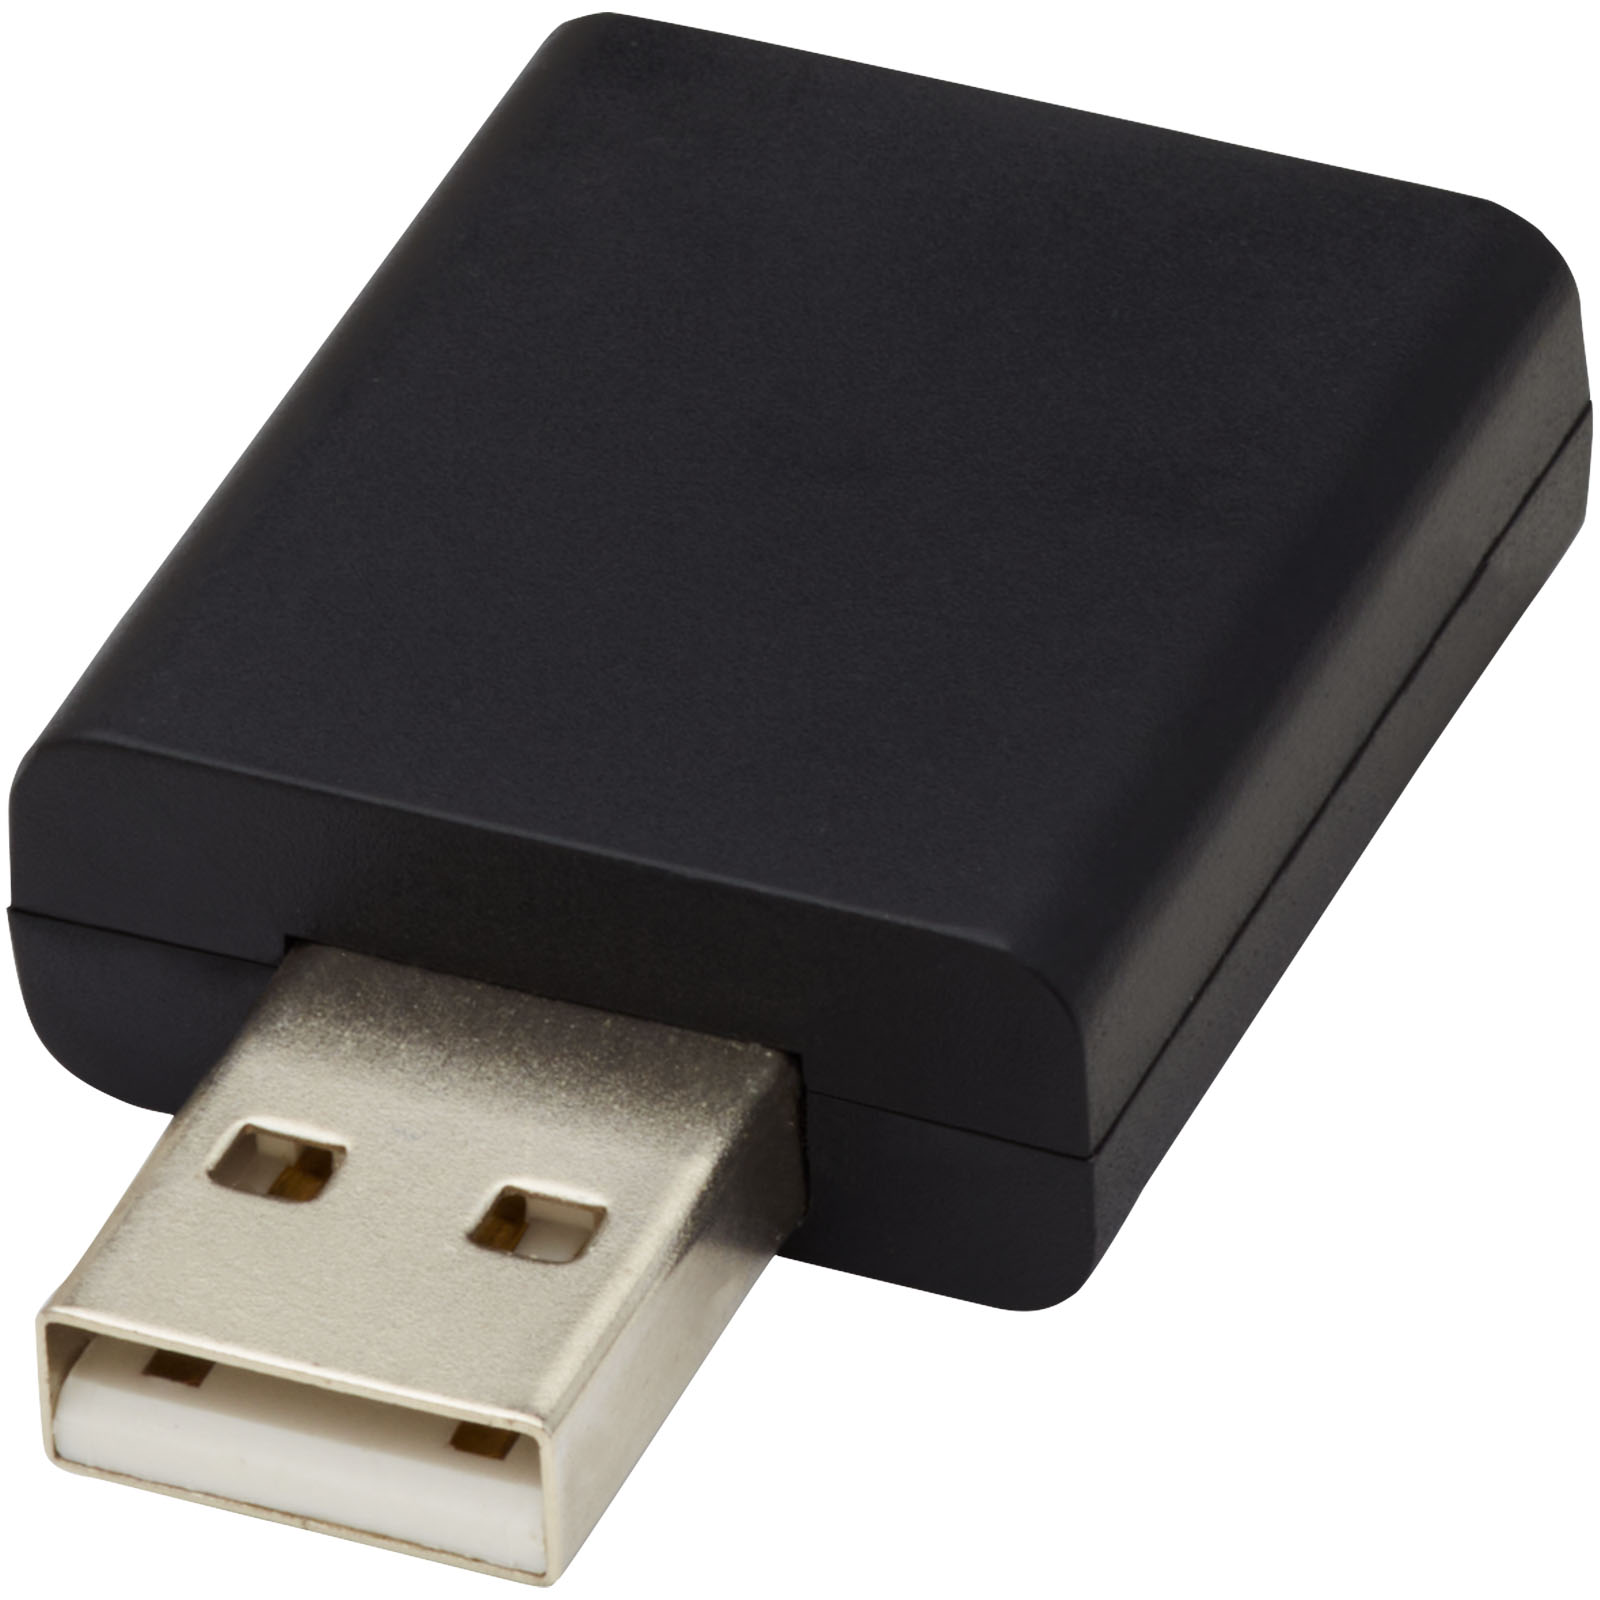 Accessoires pour ordinateur - Bloqueur de données USB Incognito